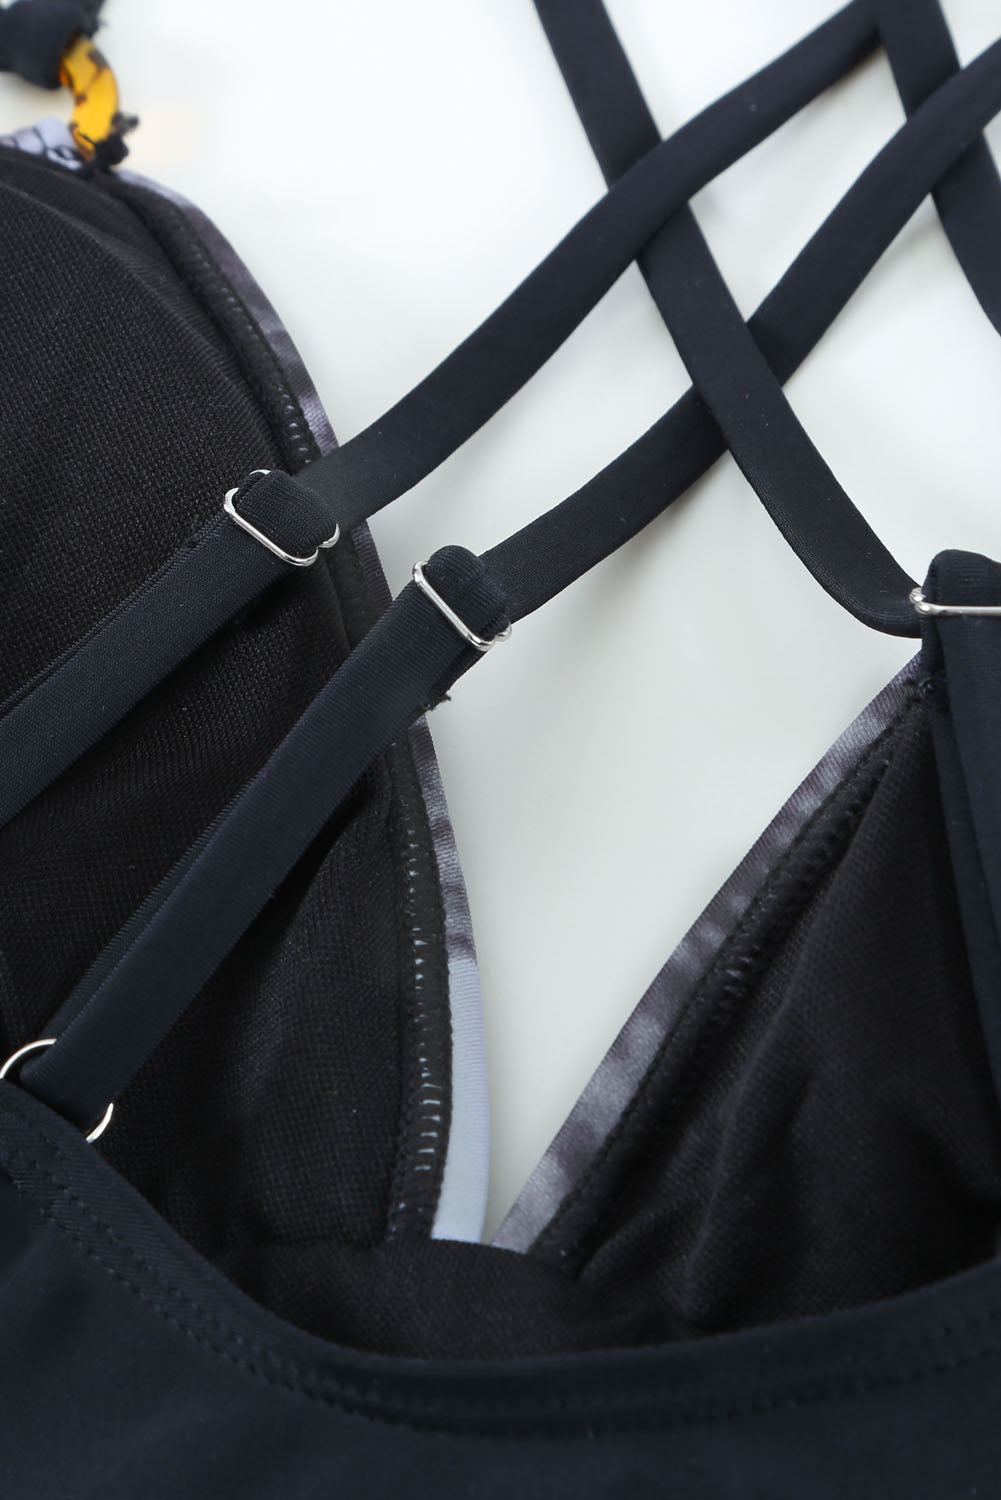 Brown Tie-dye Colorblock Crisscross Back One-piece Swimsuit